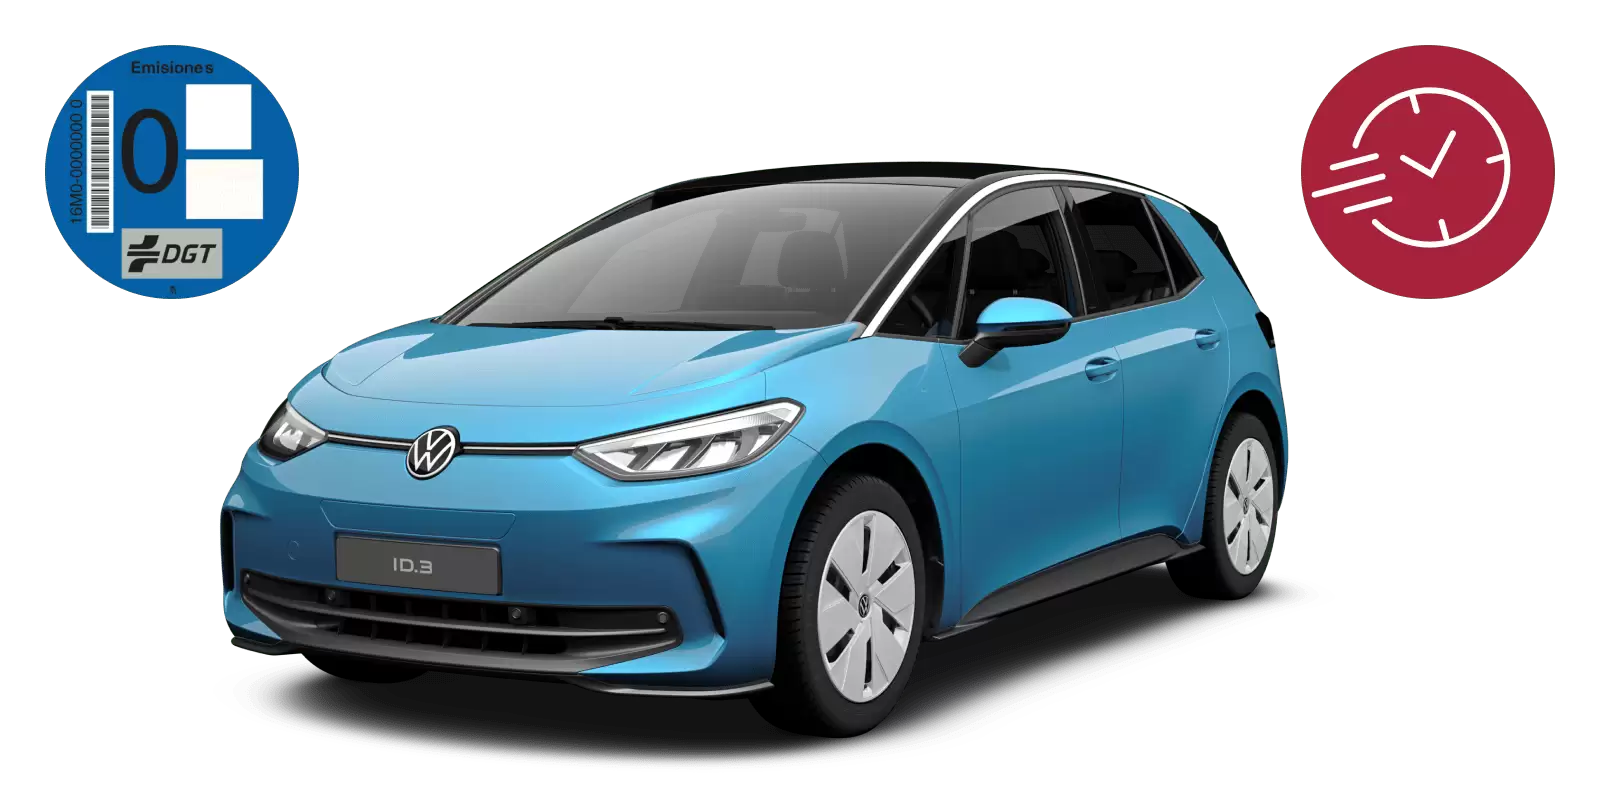 Renting Volkswagen ID. 3, coche eléctrico, color azul, sobre fondo blanco 